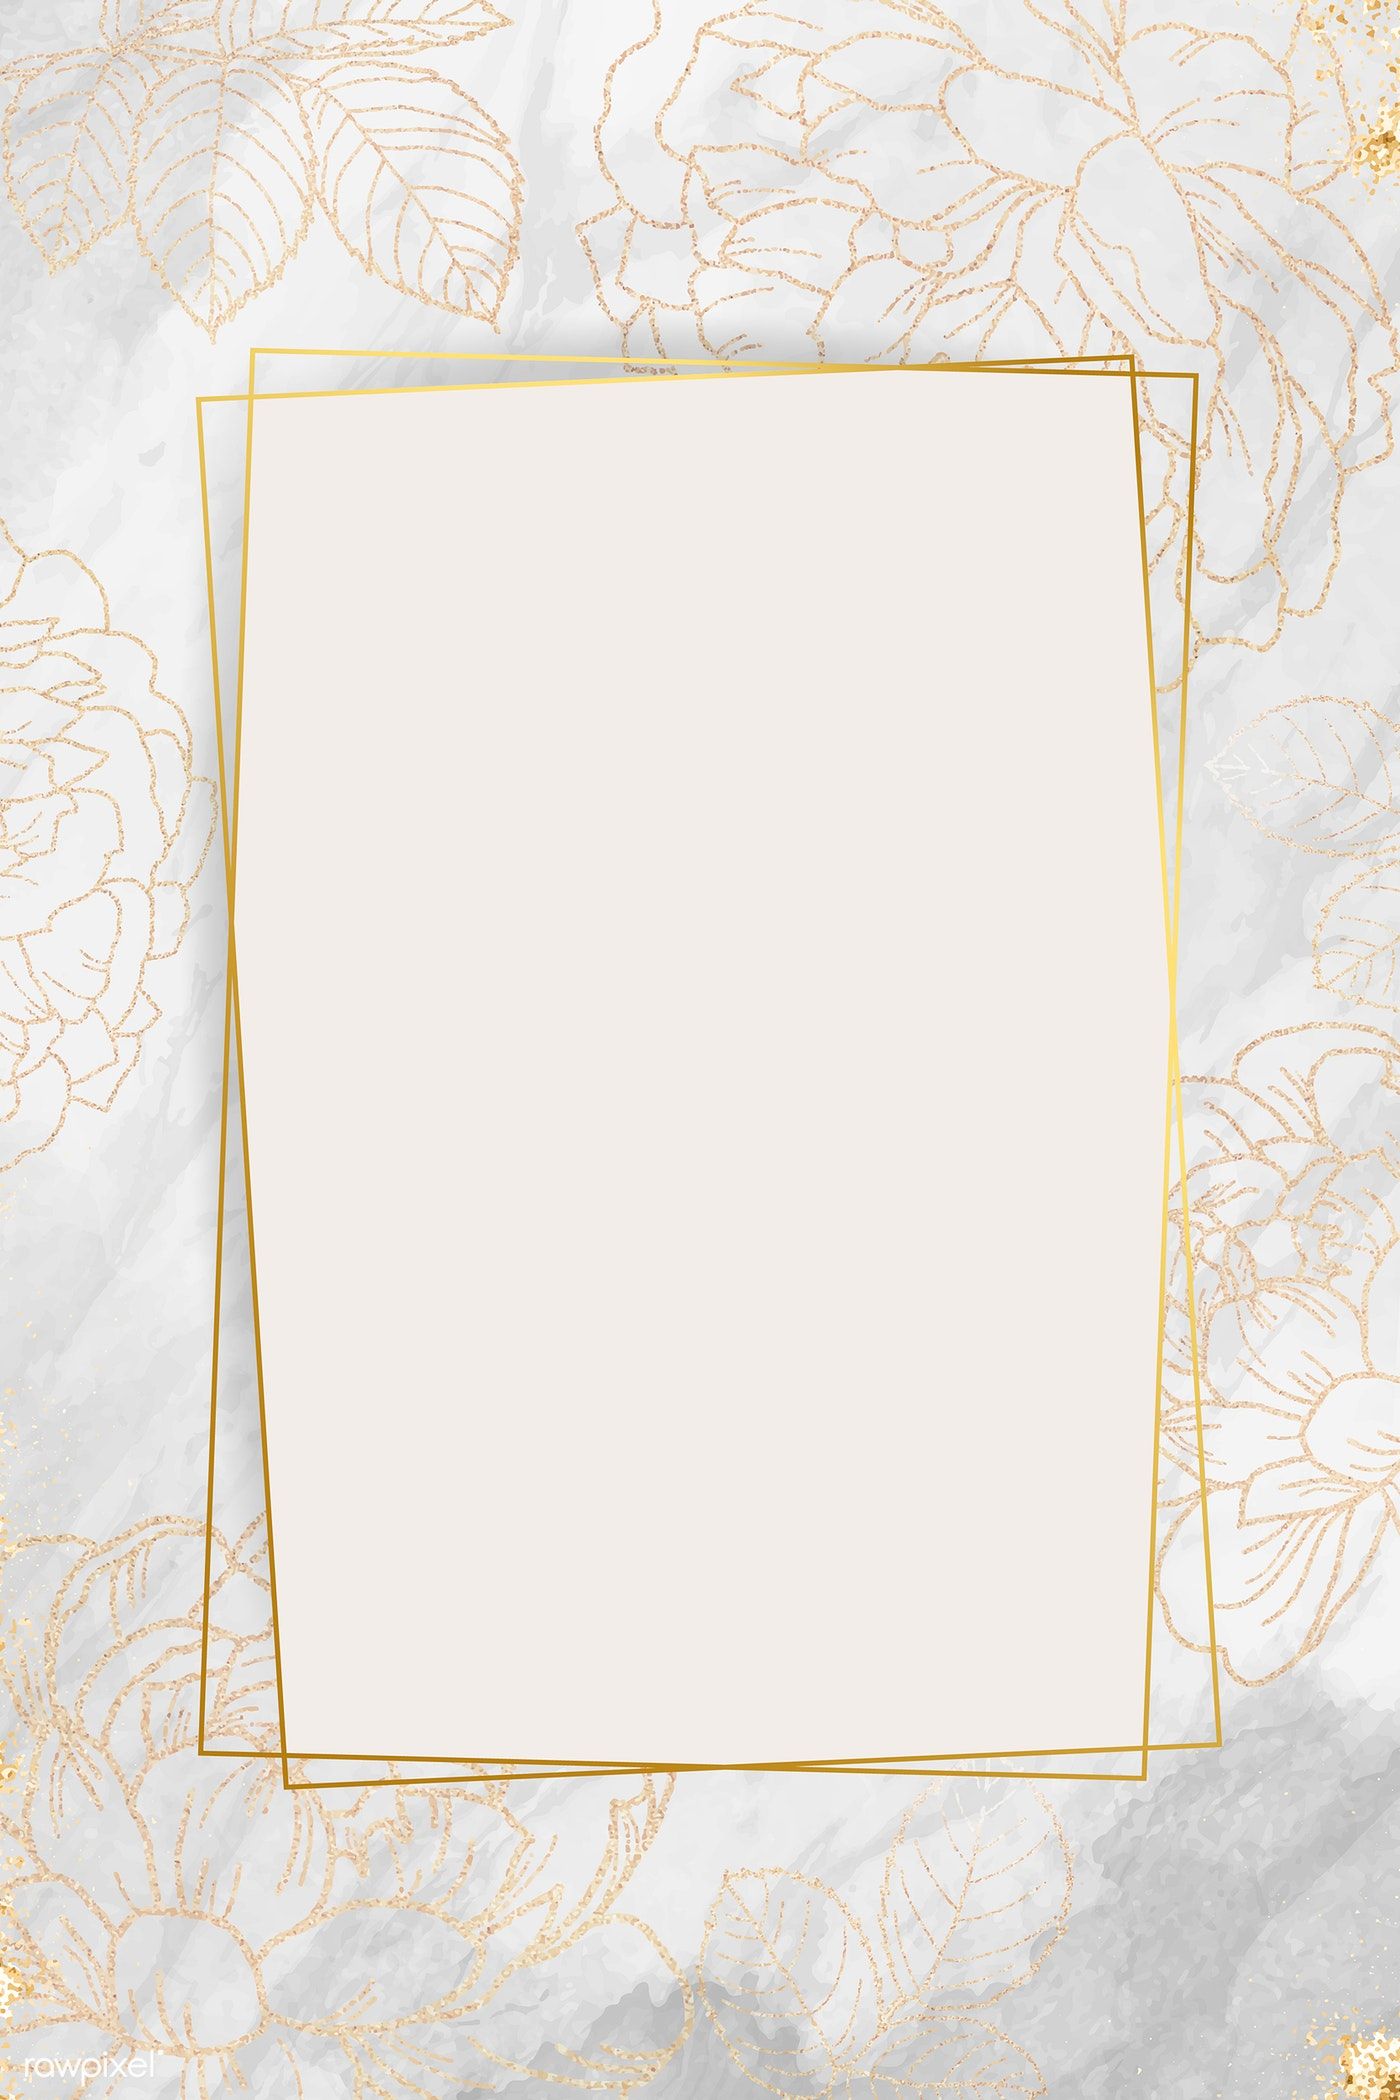 Golden floral frame design vector. premium image / marinemynt. Frame design, Gold wallpaper background, Artistic frame